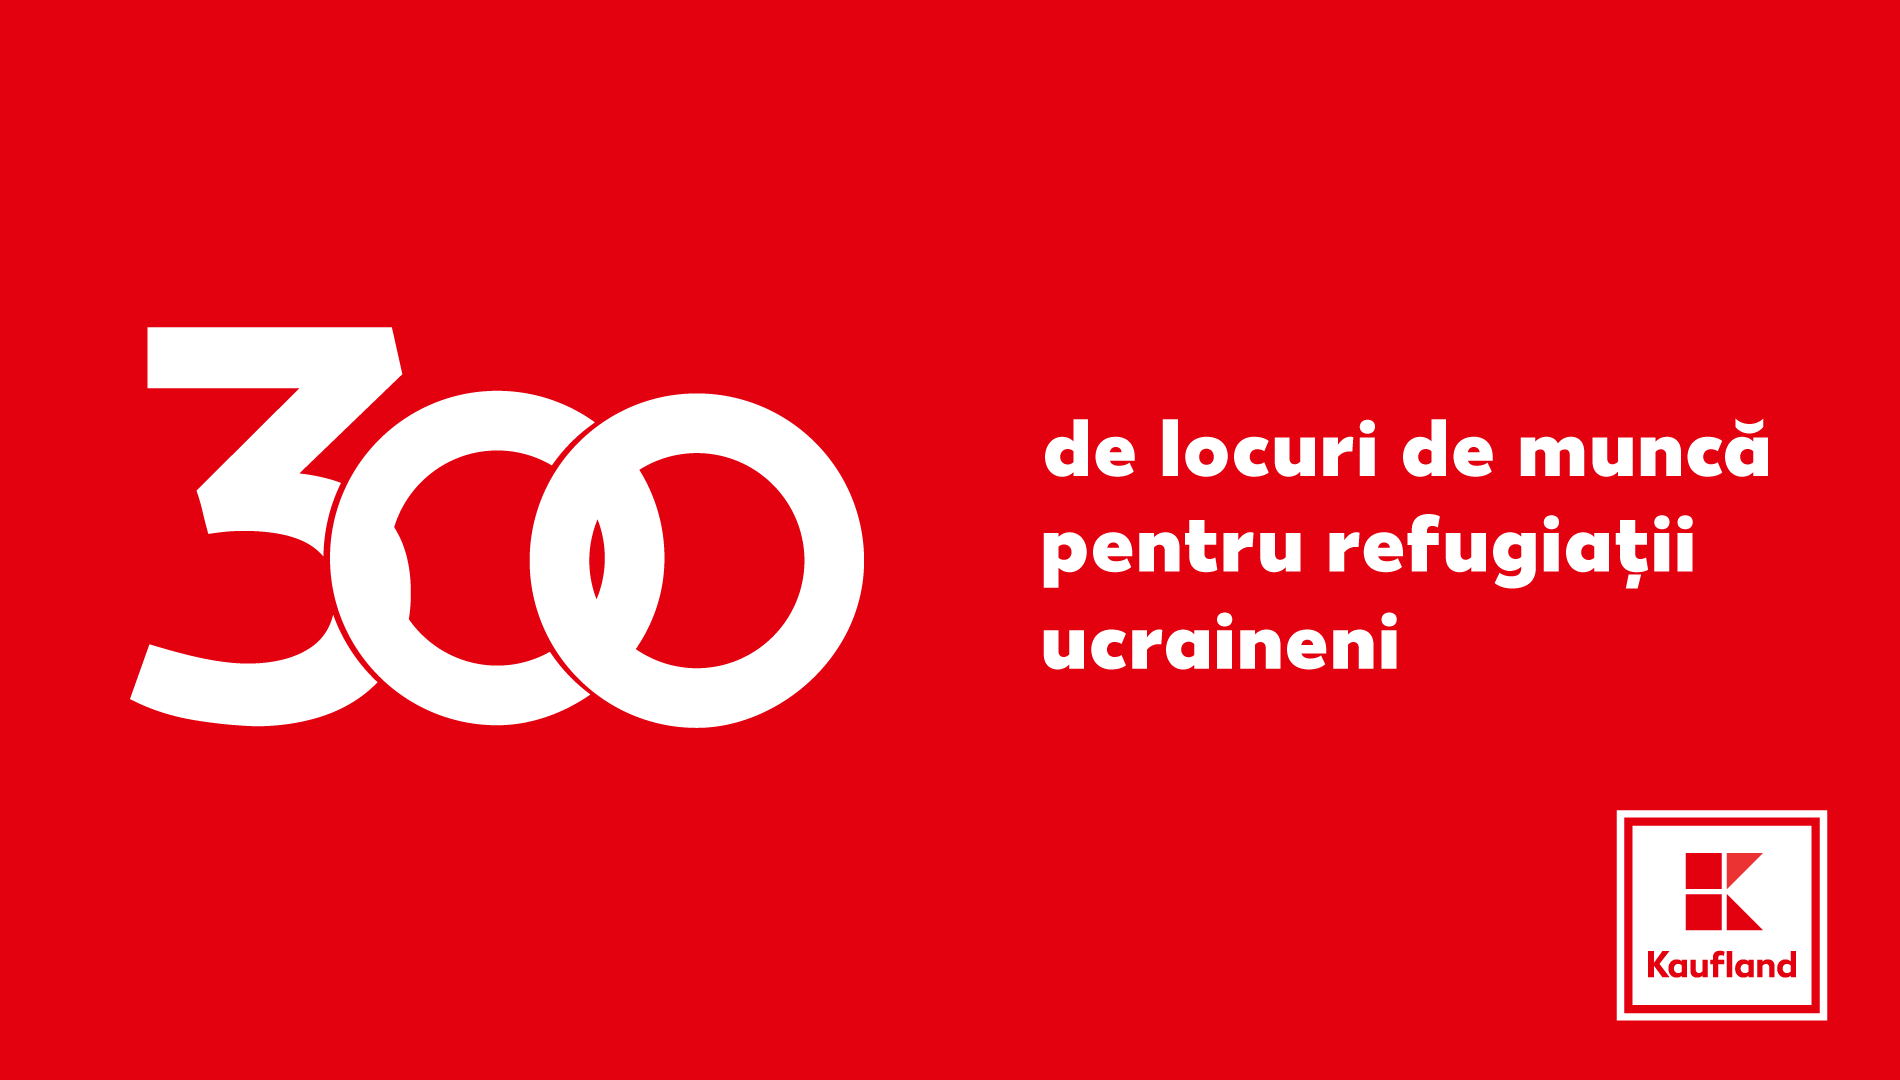 Kaufland România oferă locuri de muncă pentru refugiați ucraineni